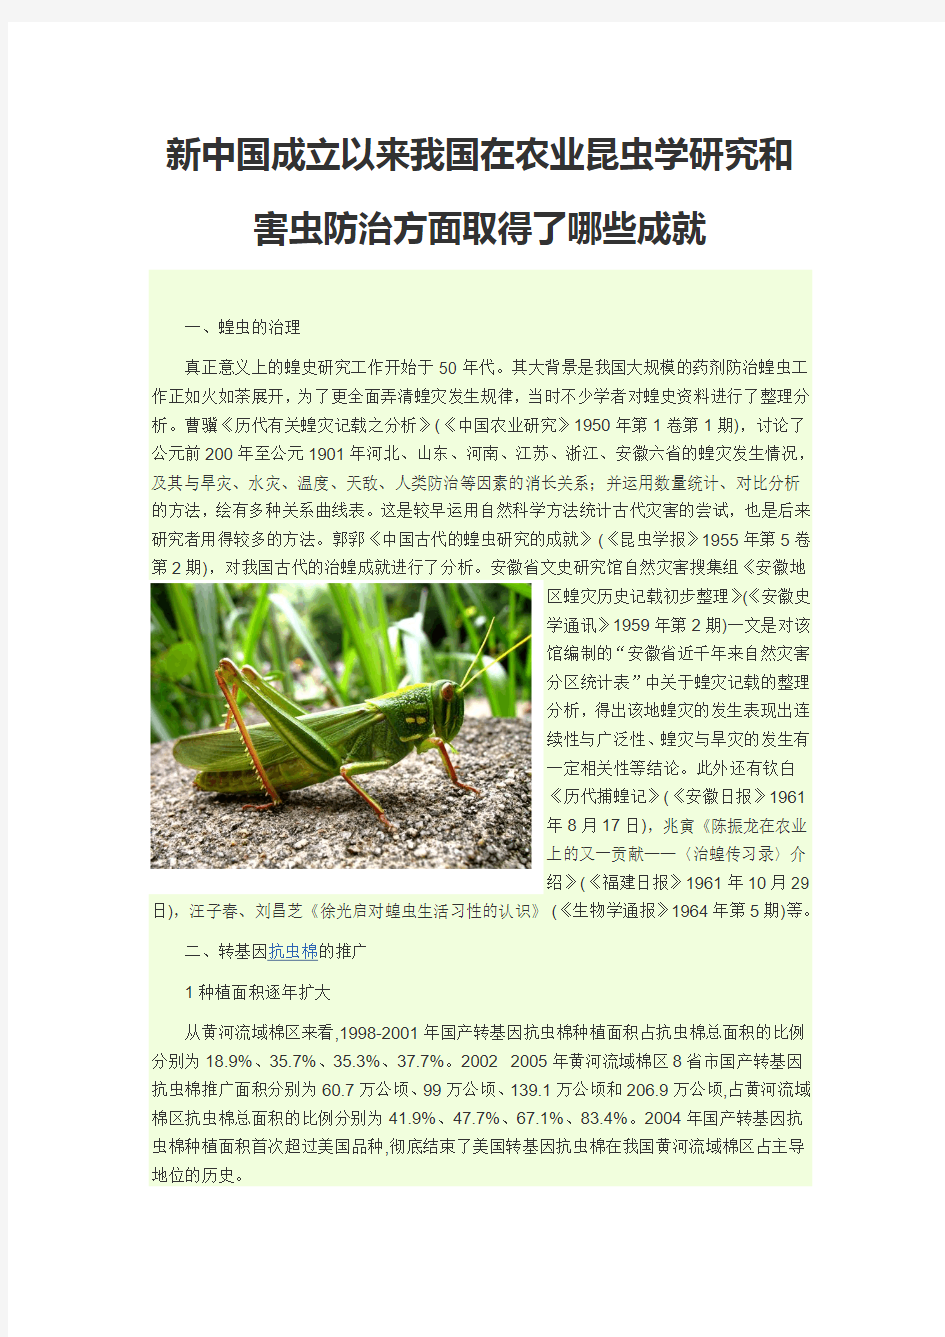 新中国成立以来我国在农业昆虫学研究和害虫防治方面取得了哪些成就